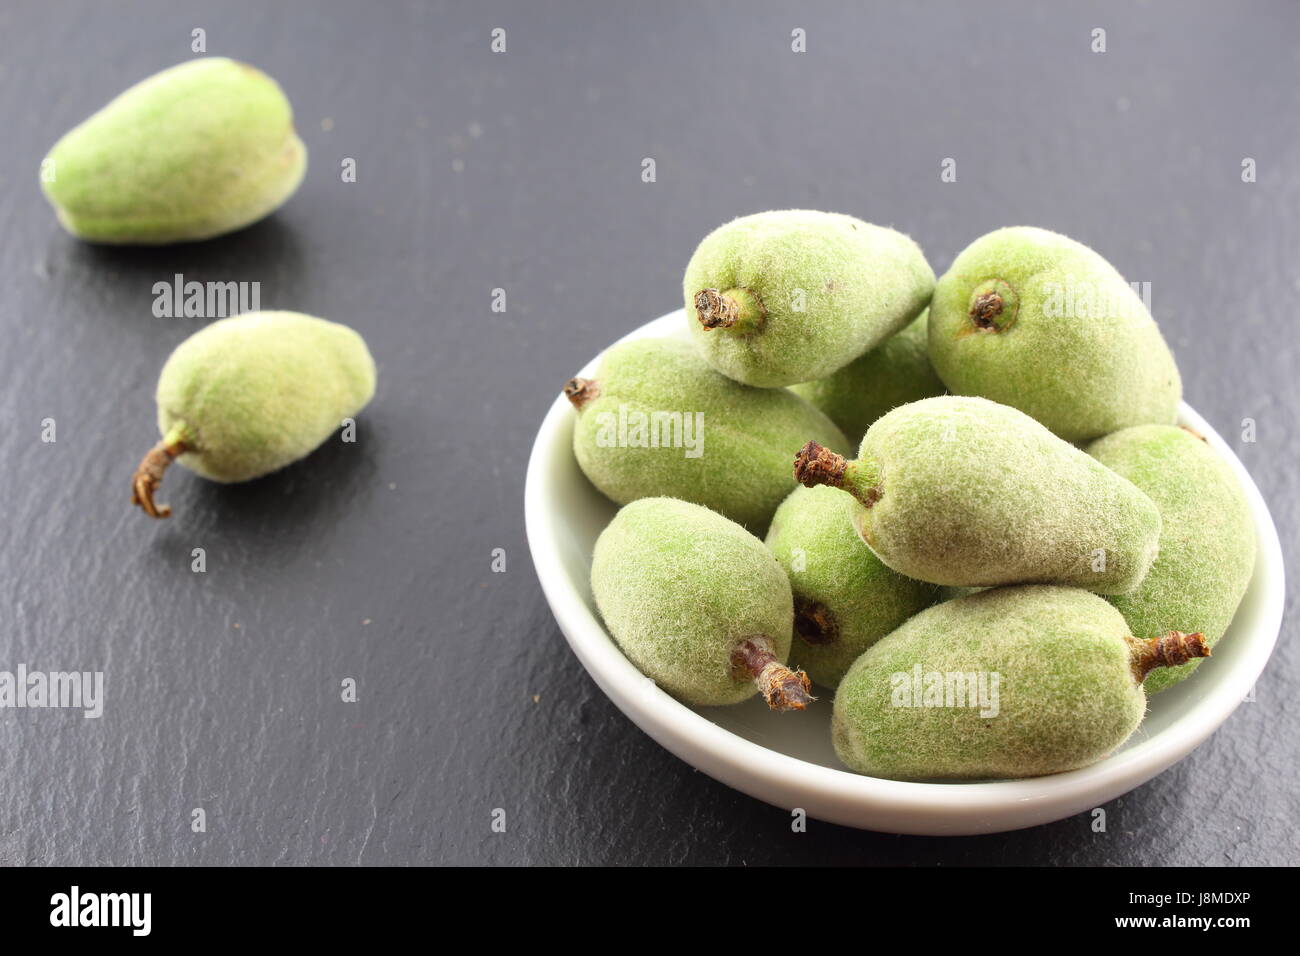 Composition de fruits amande verte fraîche dans un petit bol blanc Banque D'Images